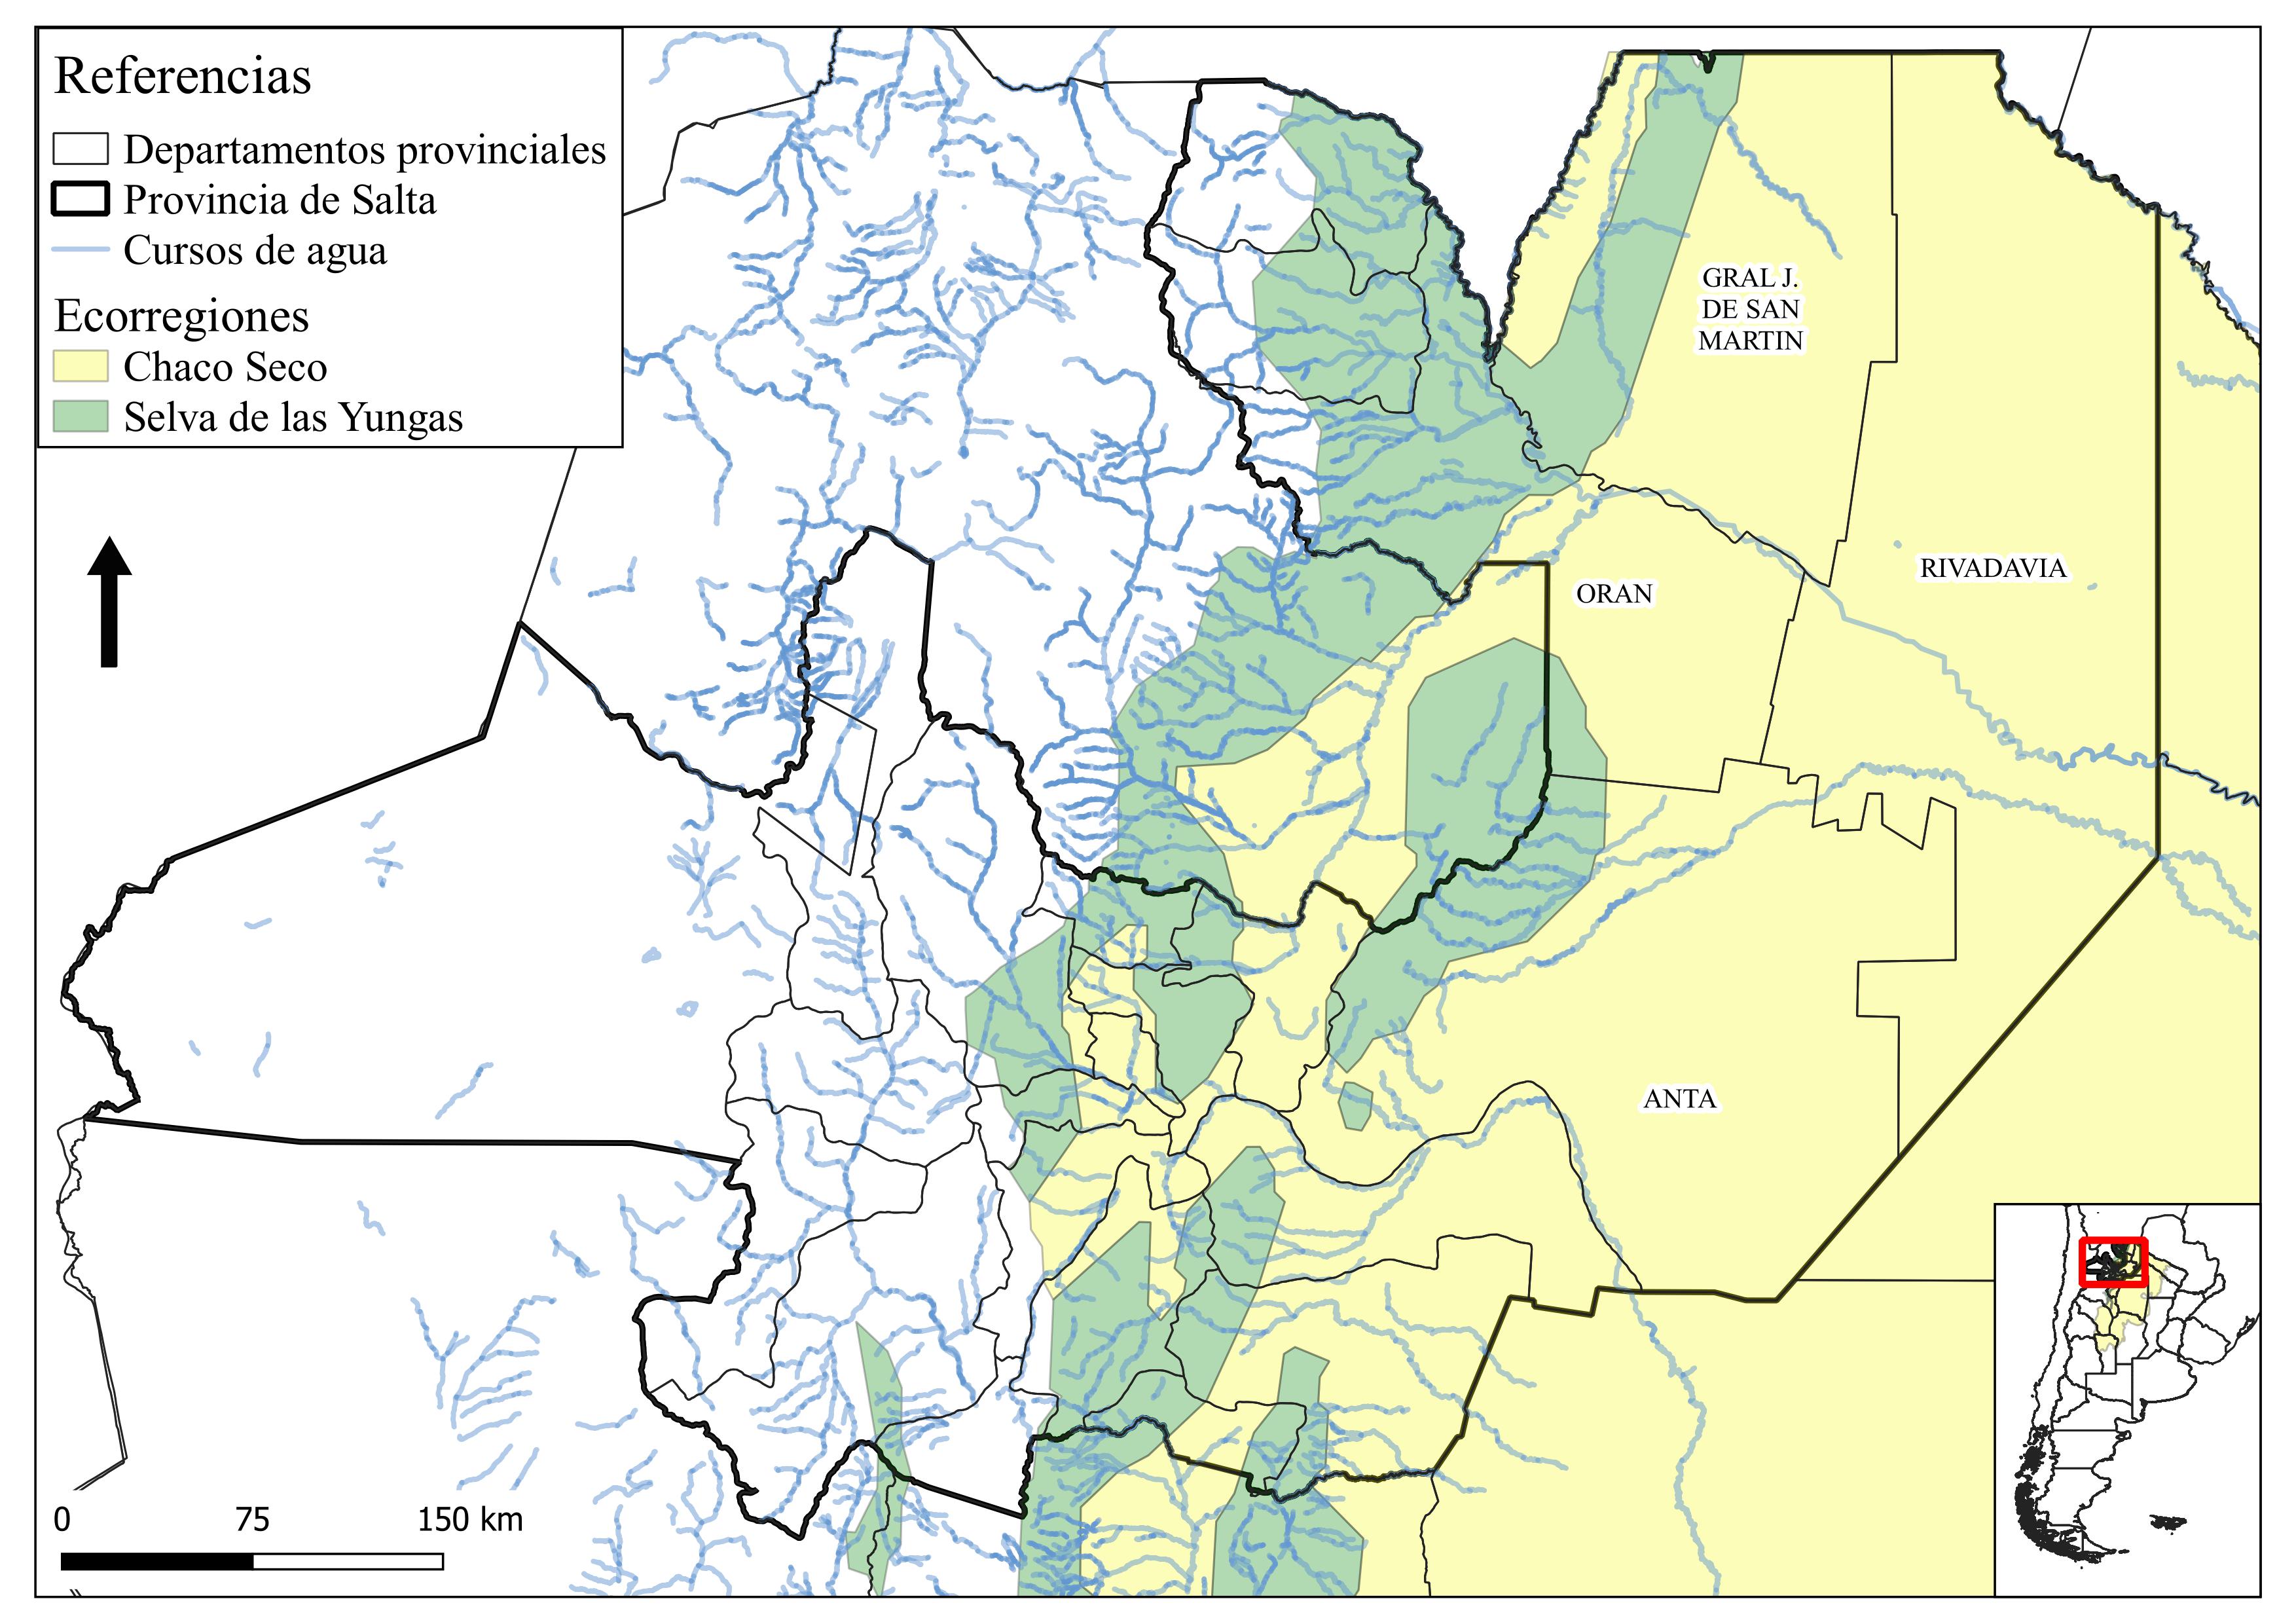 Área de estudio: el Chaco
salteño y sus principales cursos de agua